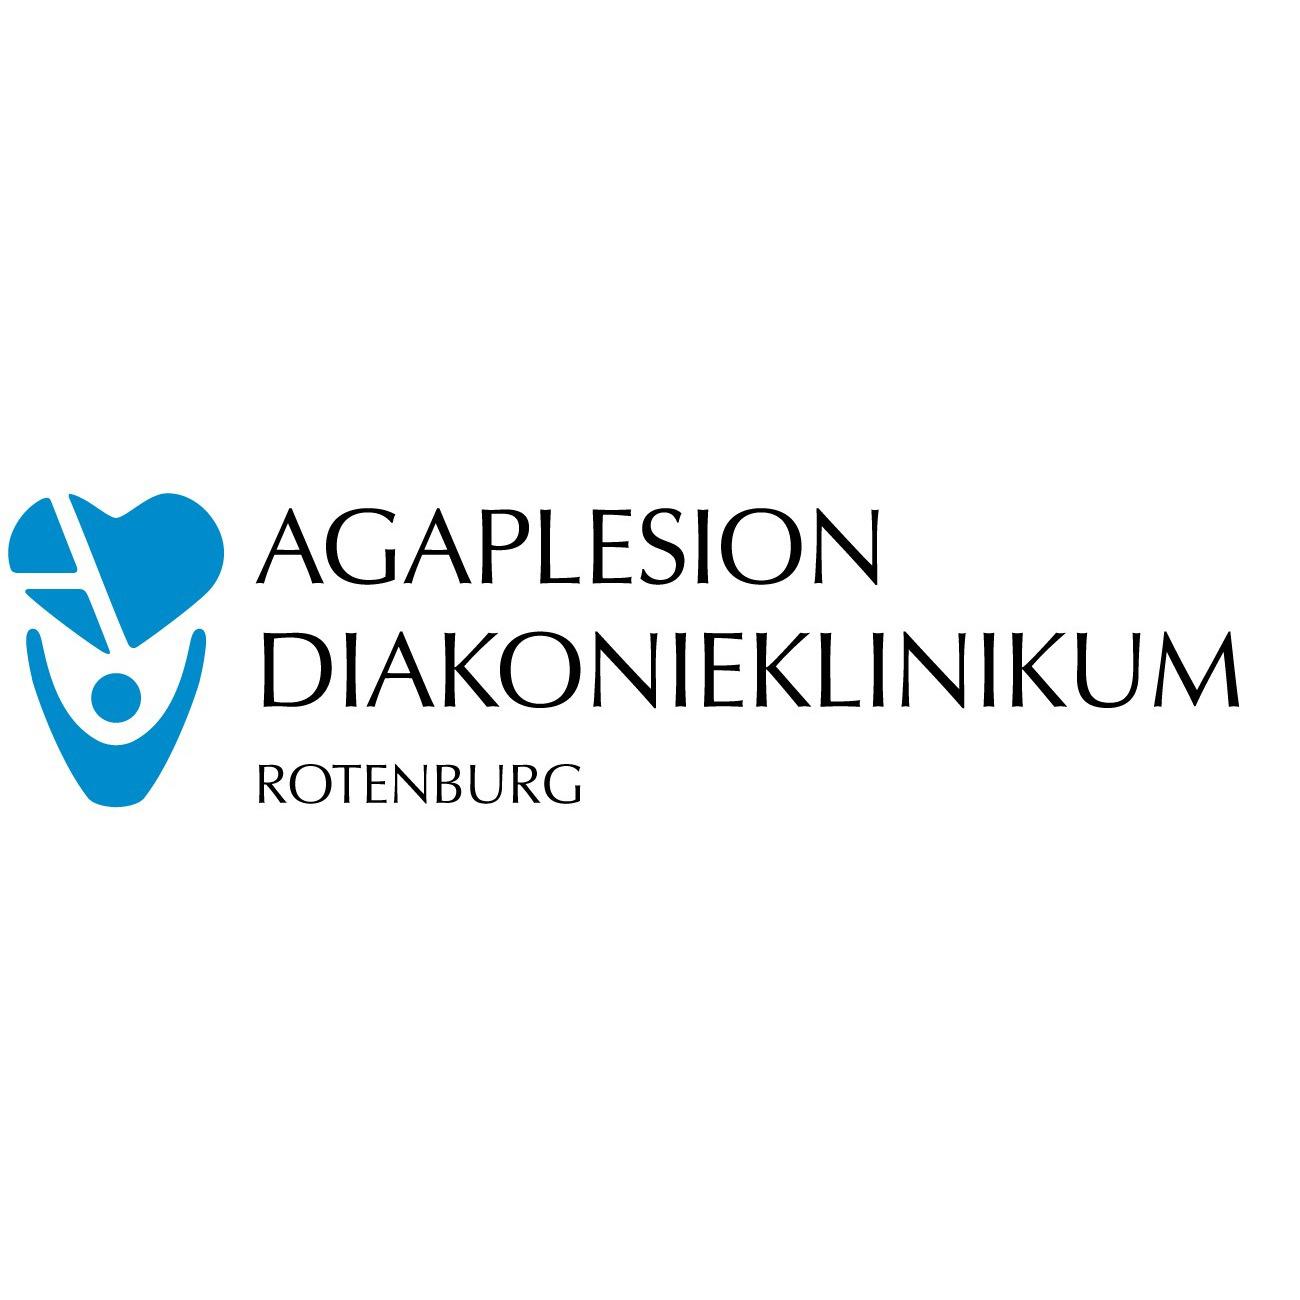 AGAPLESION DIAKONIEKLINIKUM ROTENBURG Logo